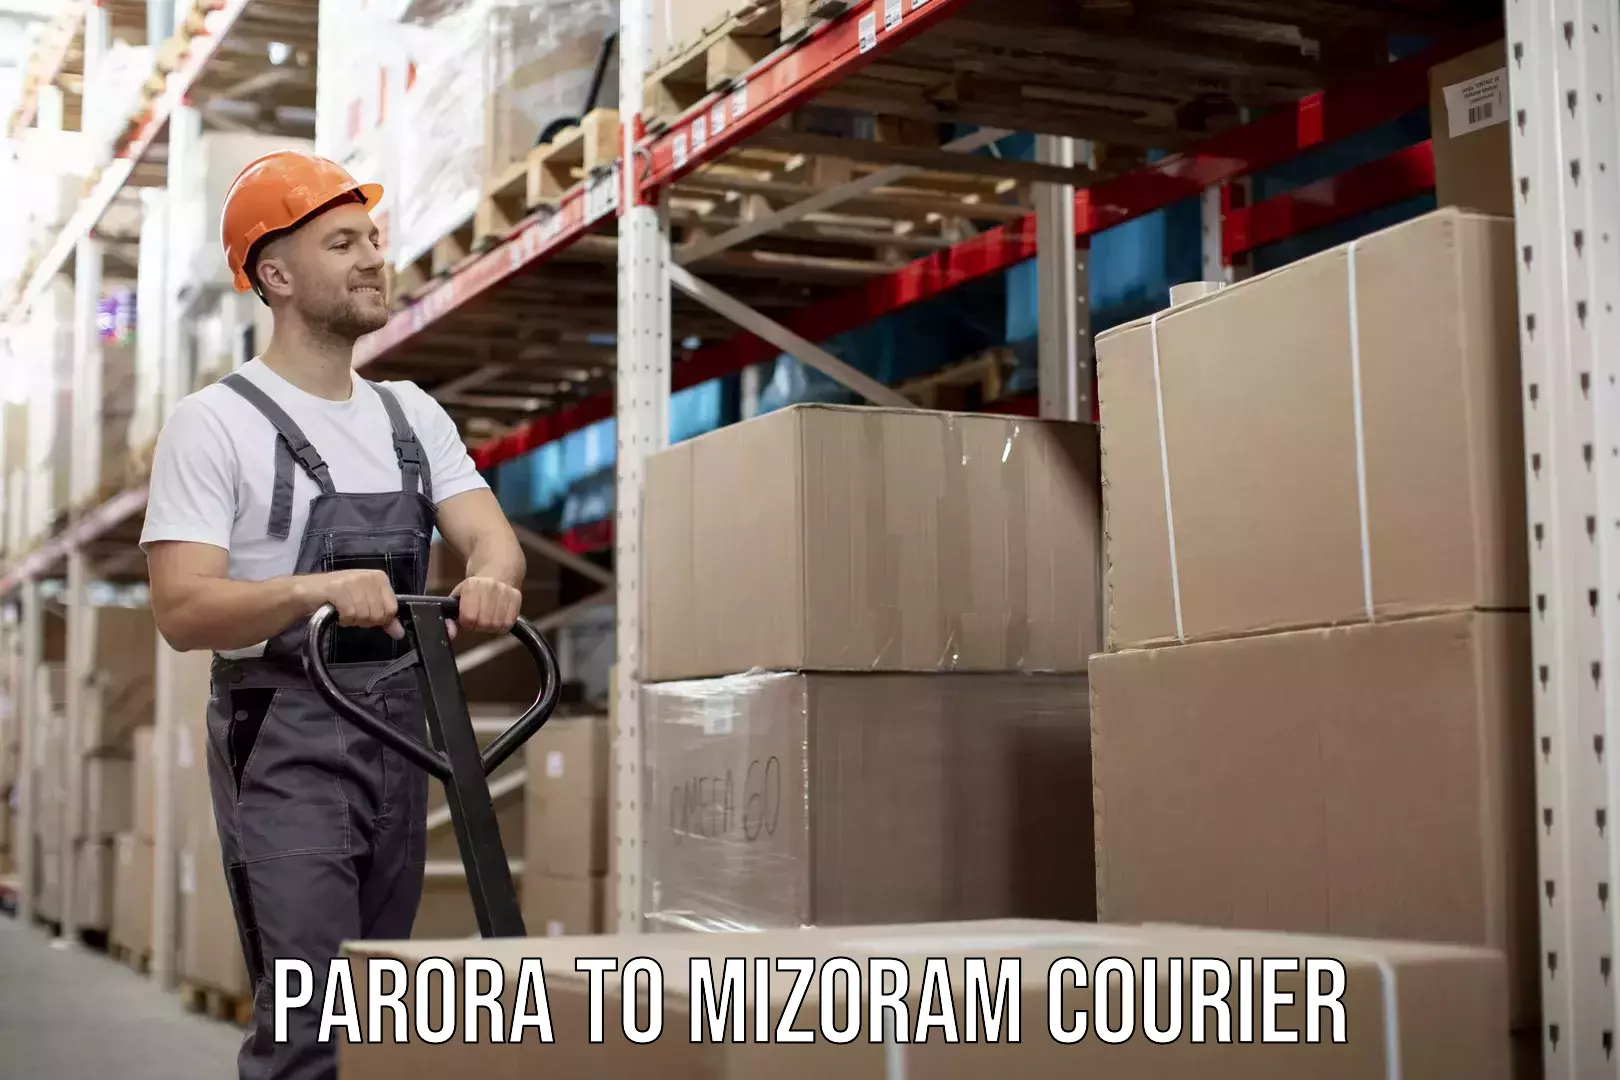 Moving and storage services Parora to Mizoram